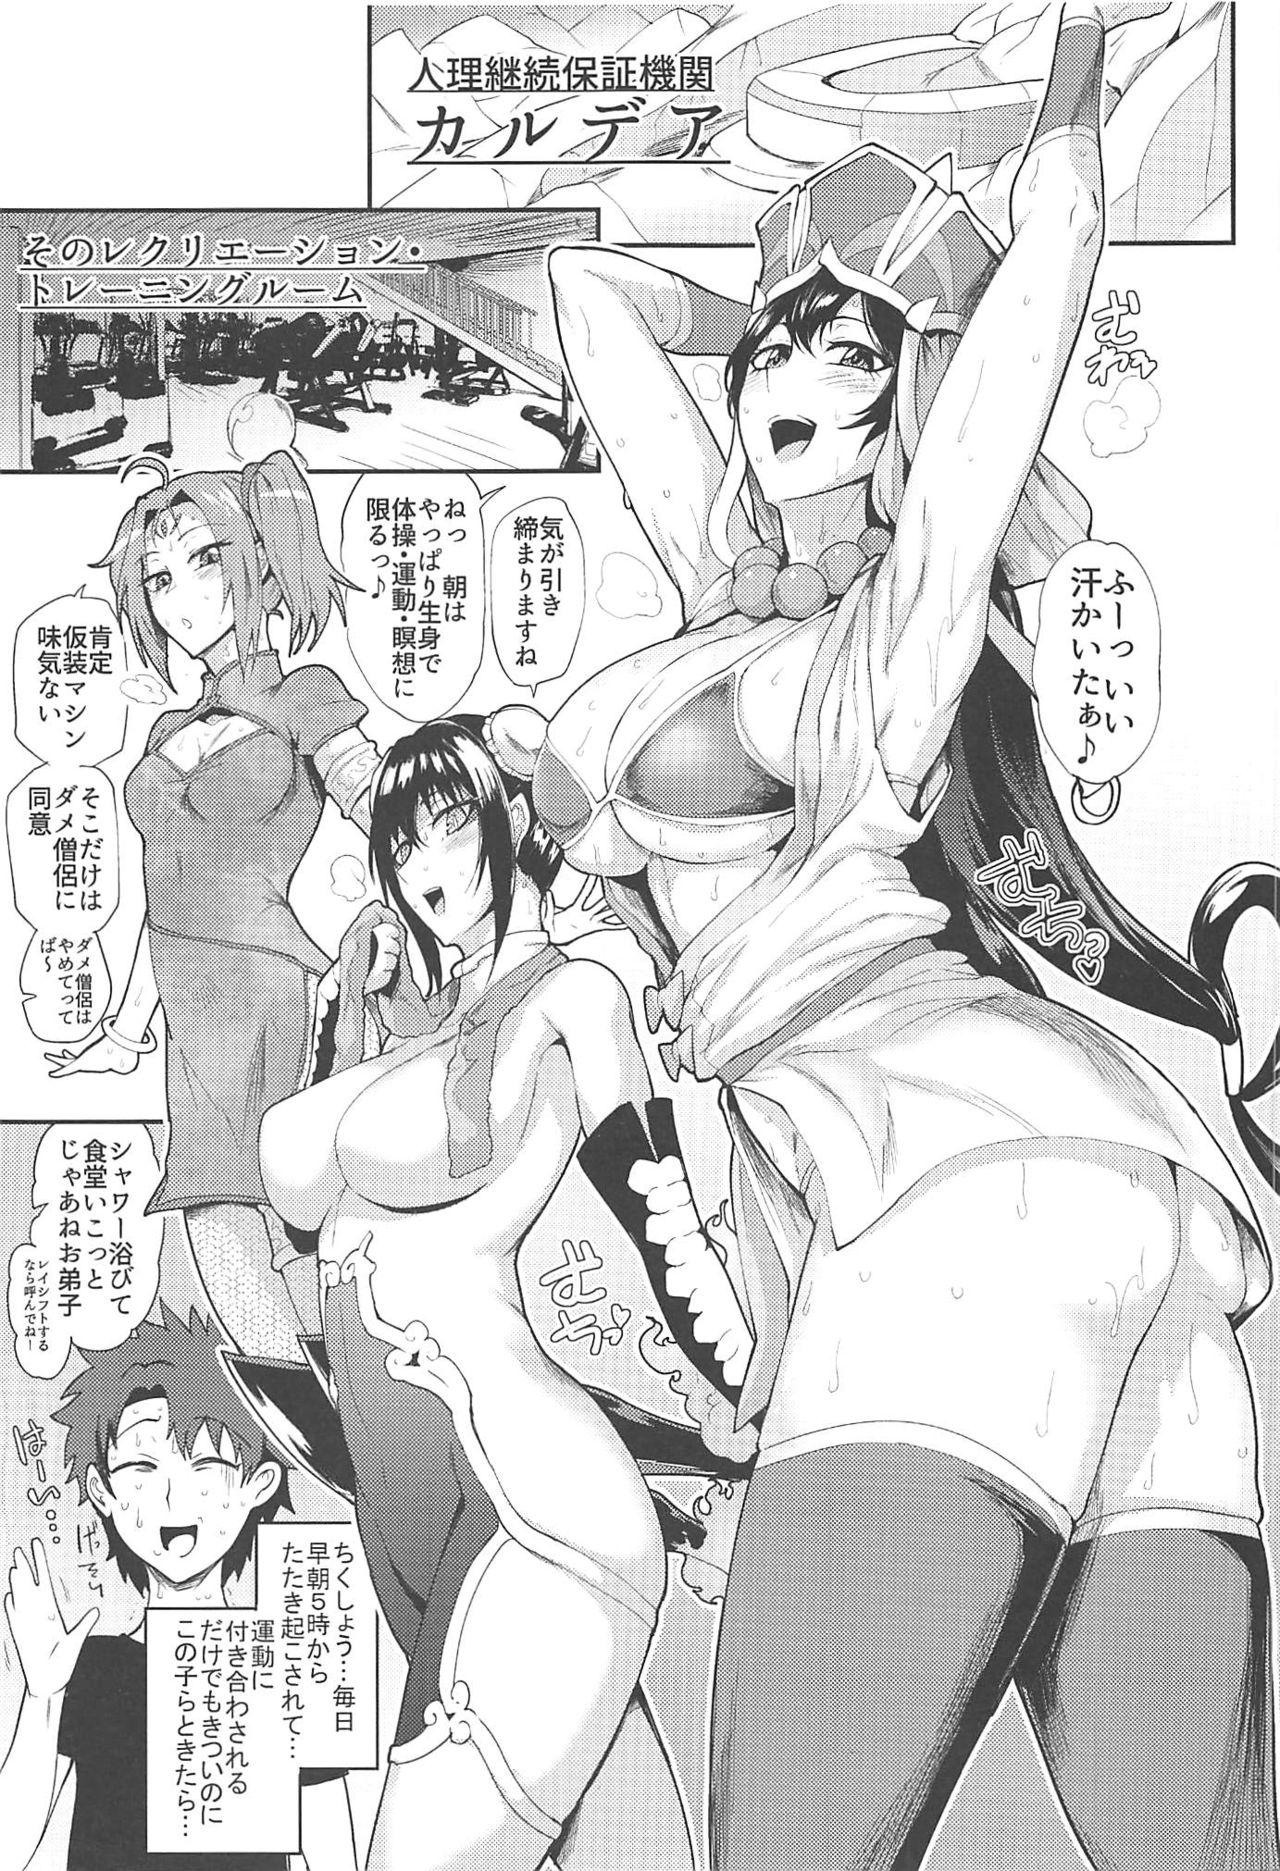 Real Sex Housanjou + Totsugasa C96 Omake Gucchan Paper - Fate grand order Nice Ass - Page 2